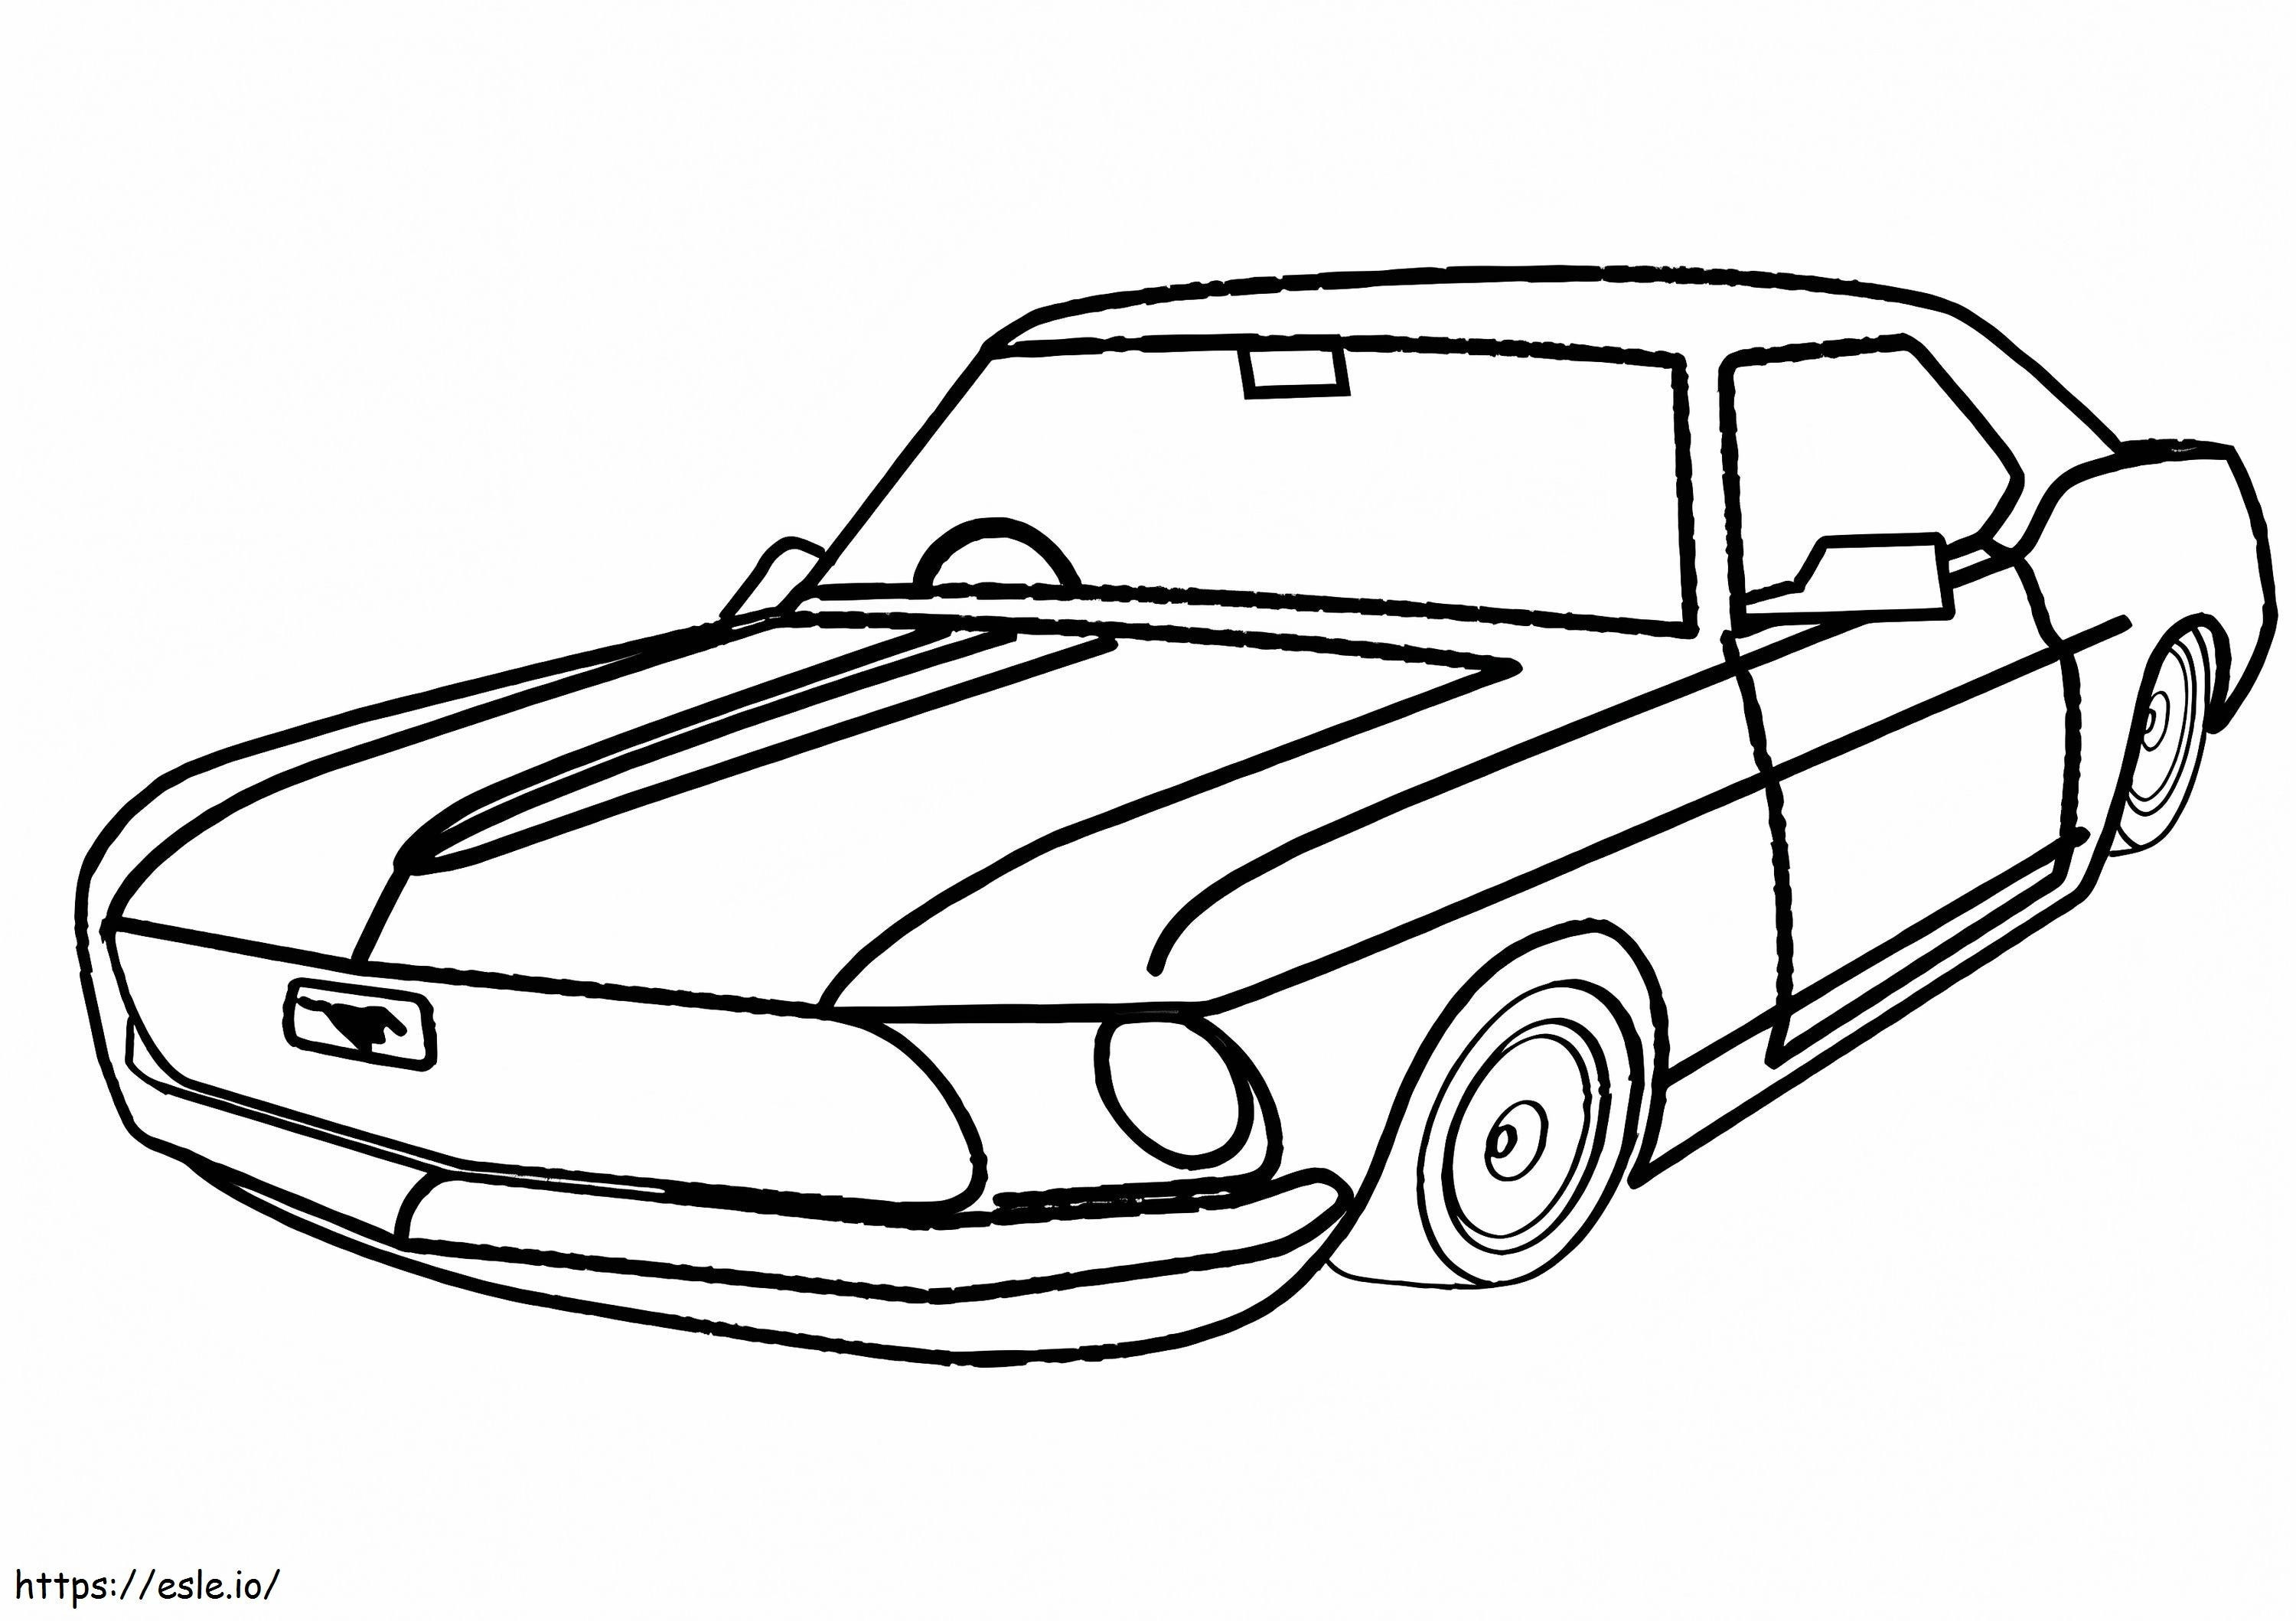 Coloriage Une Mustang à imprimer dessin